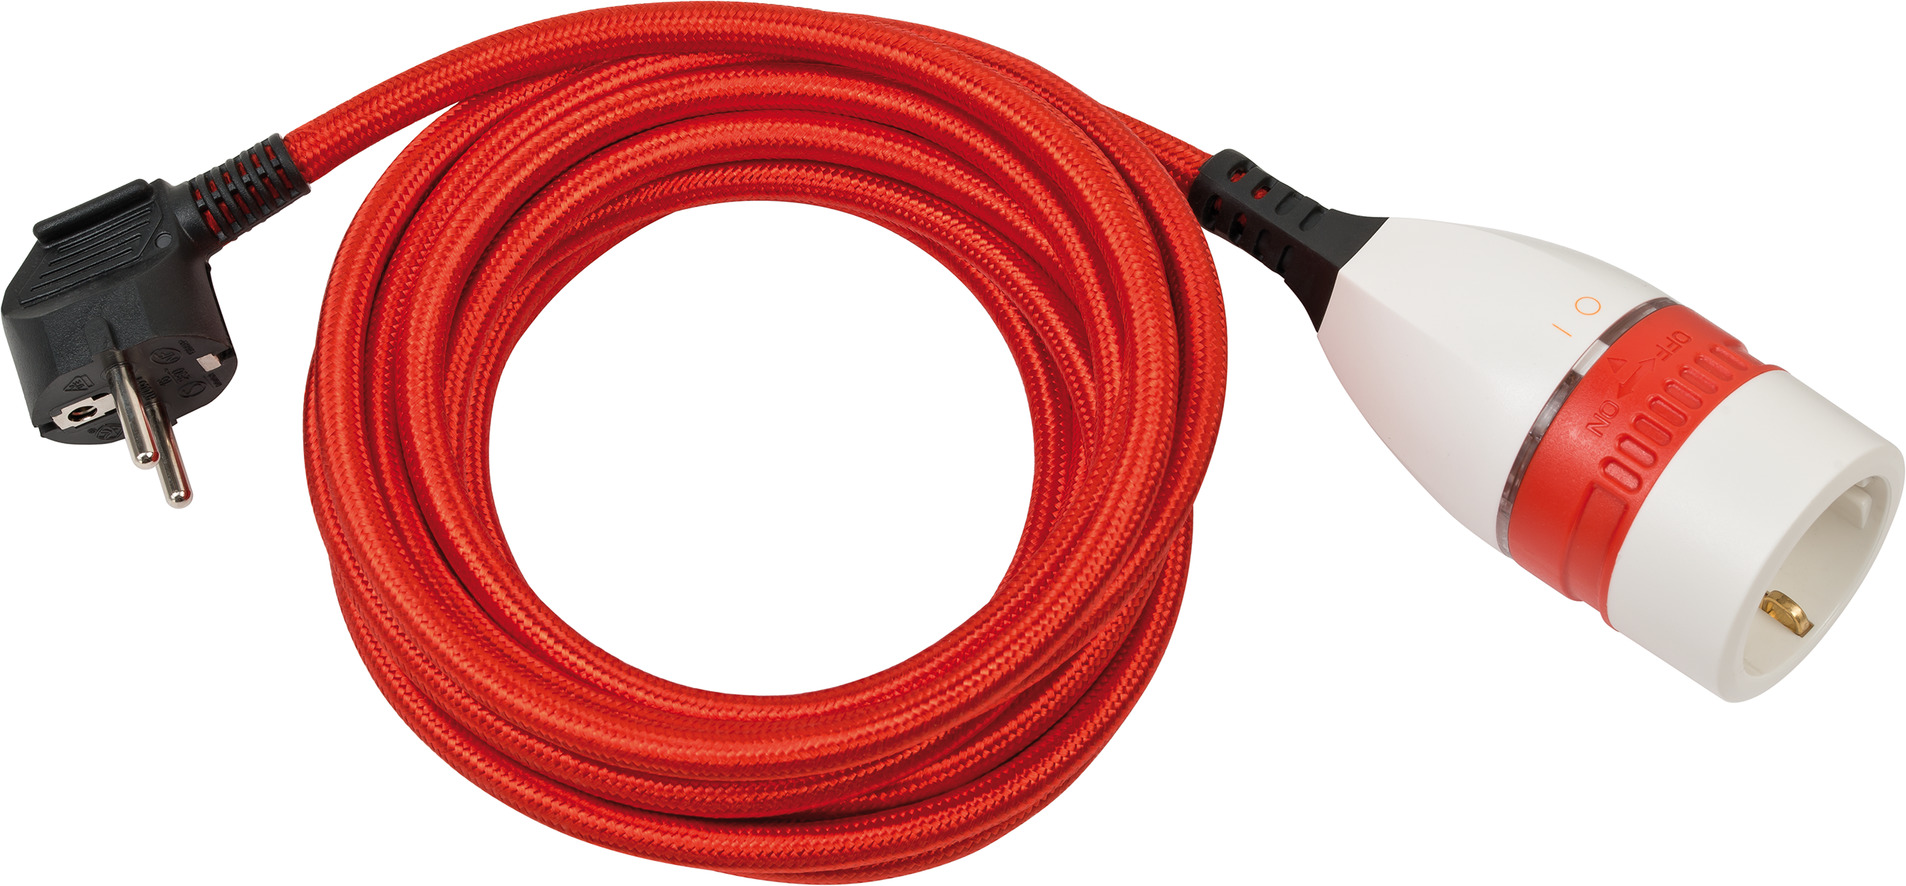 Cable alargador de plástico de alta calidad con interruptor giratorio y  cubierta textil 5m H05VV-F 3G1,5 negro/blanco